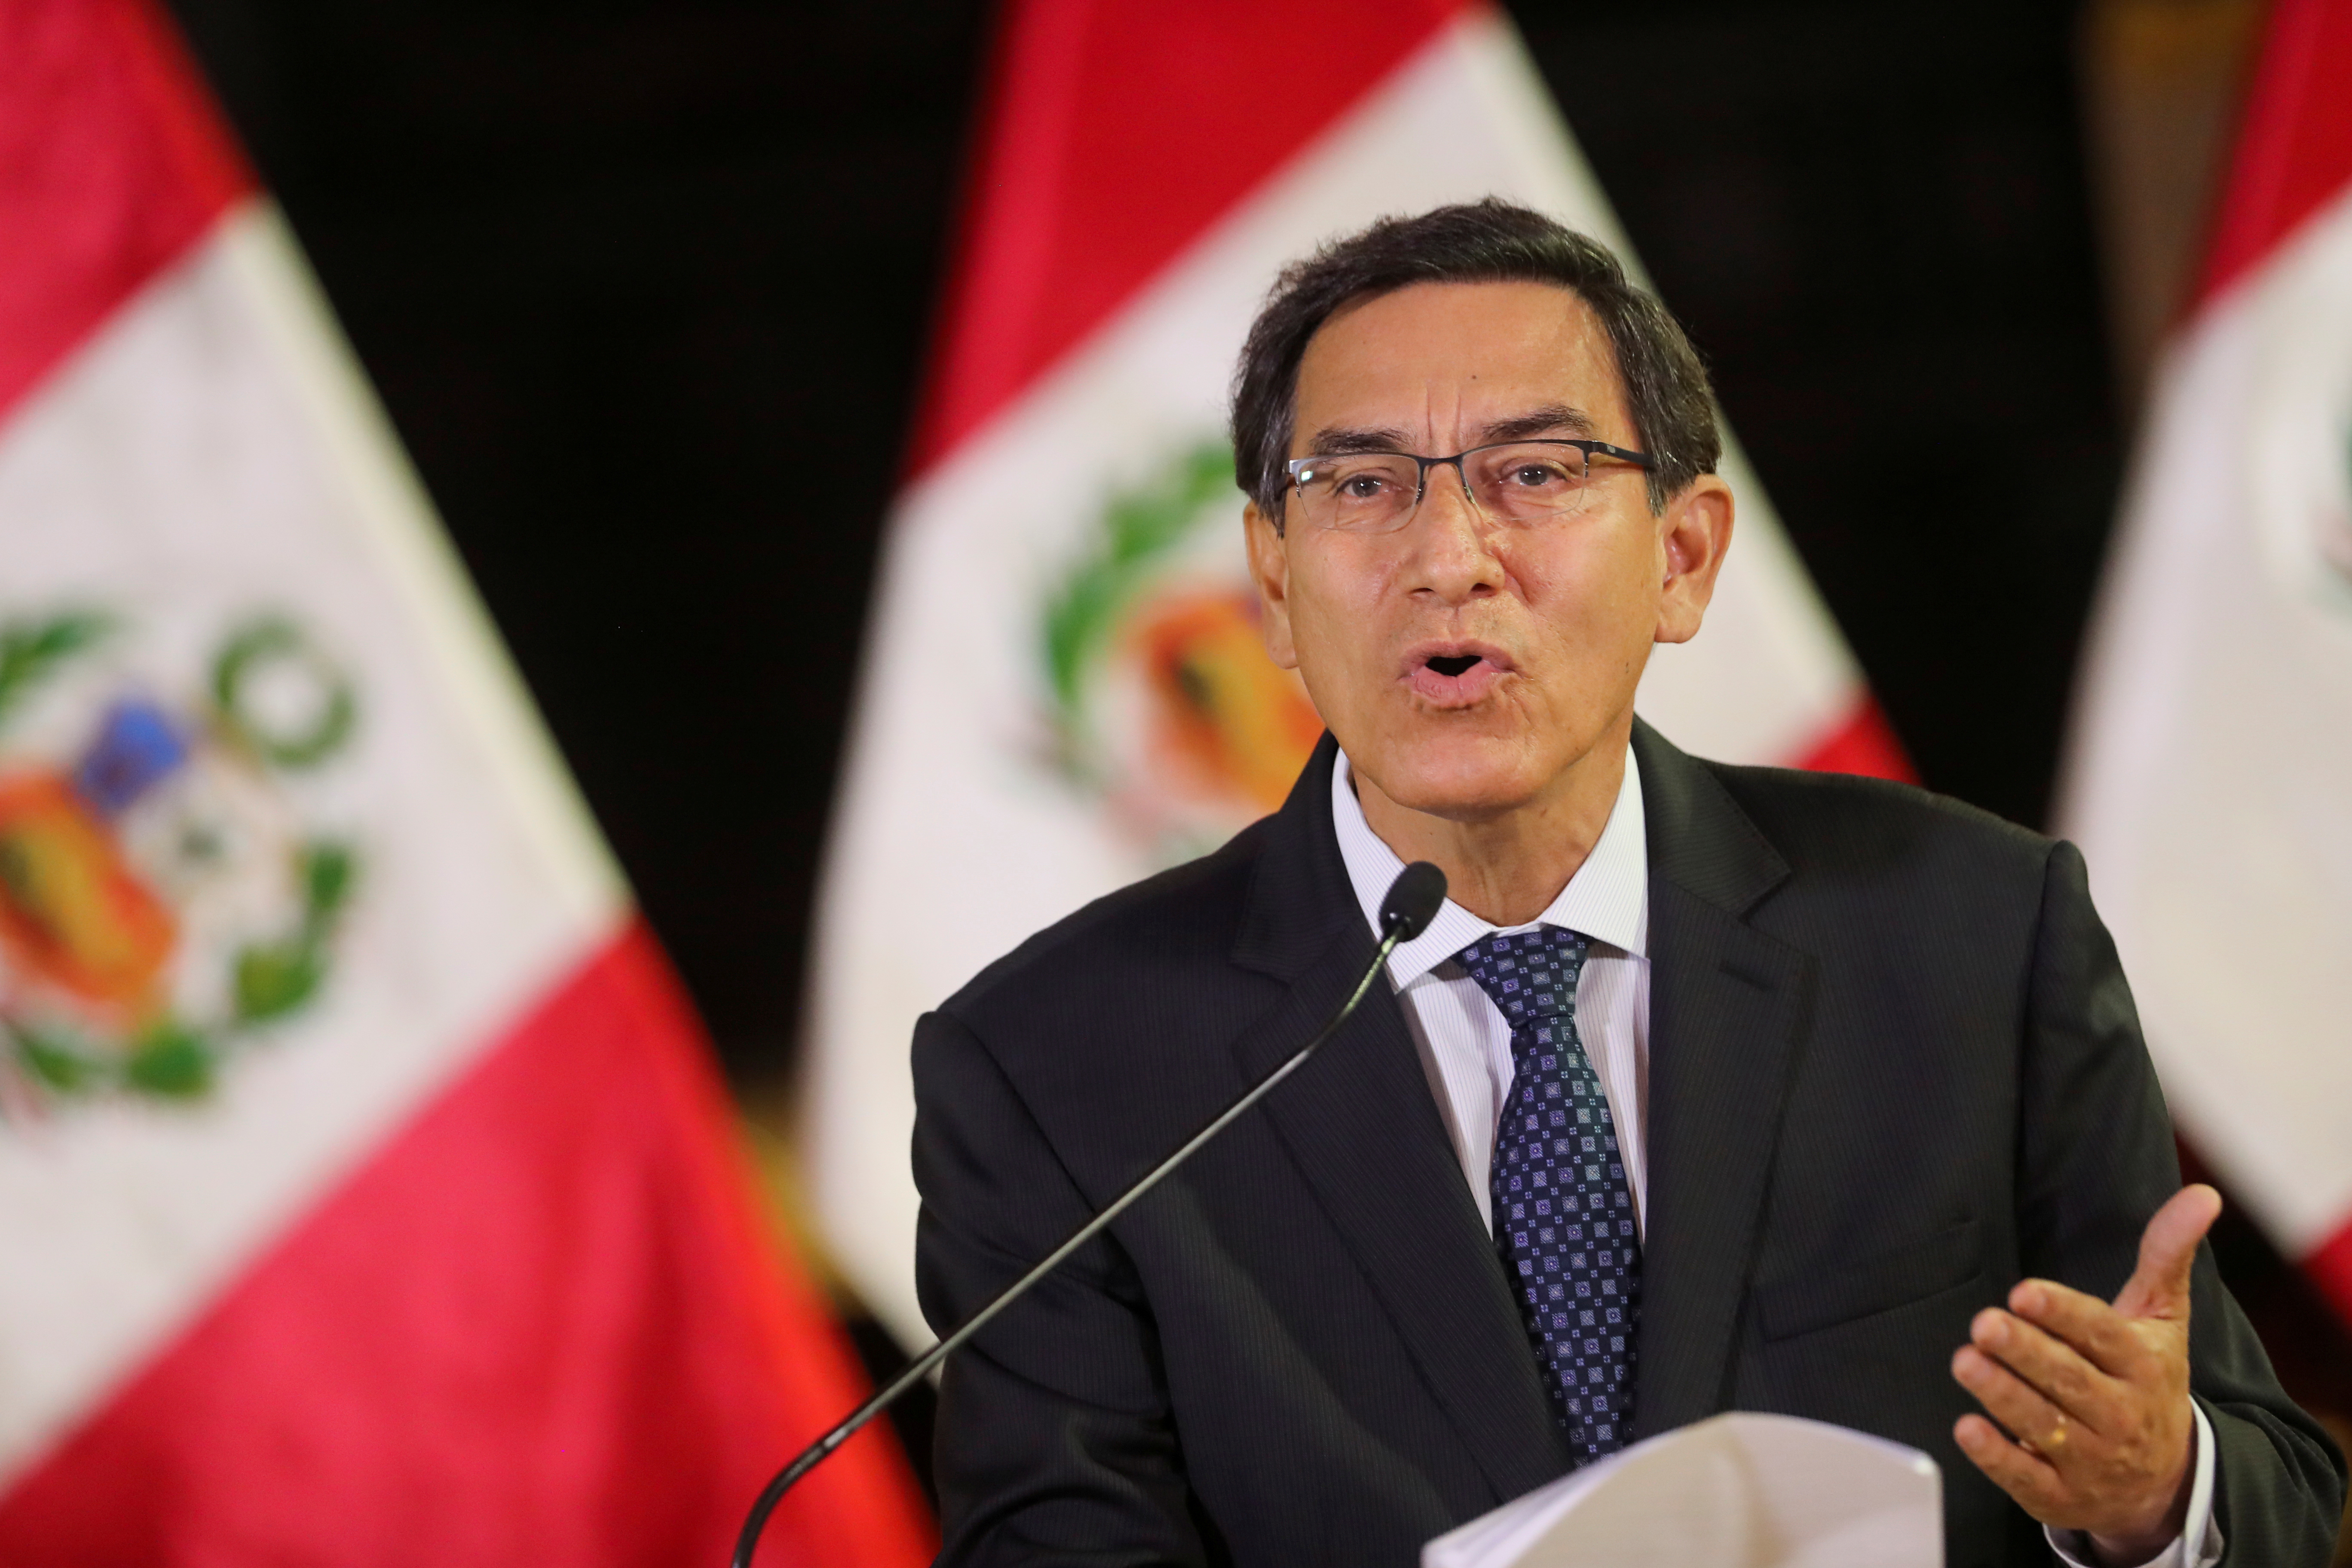 Fiscalía de Perú pidió impedimento de salida del país para Martín Vizcarra luego de su destitución